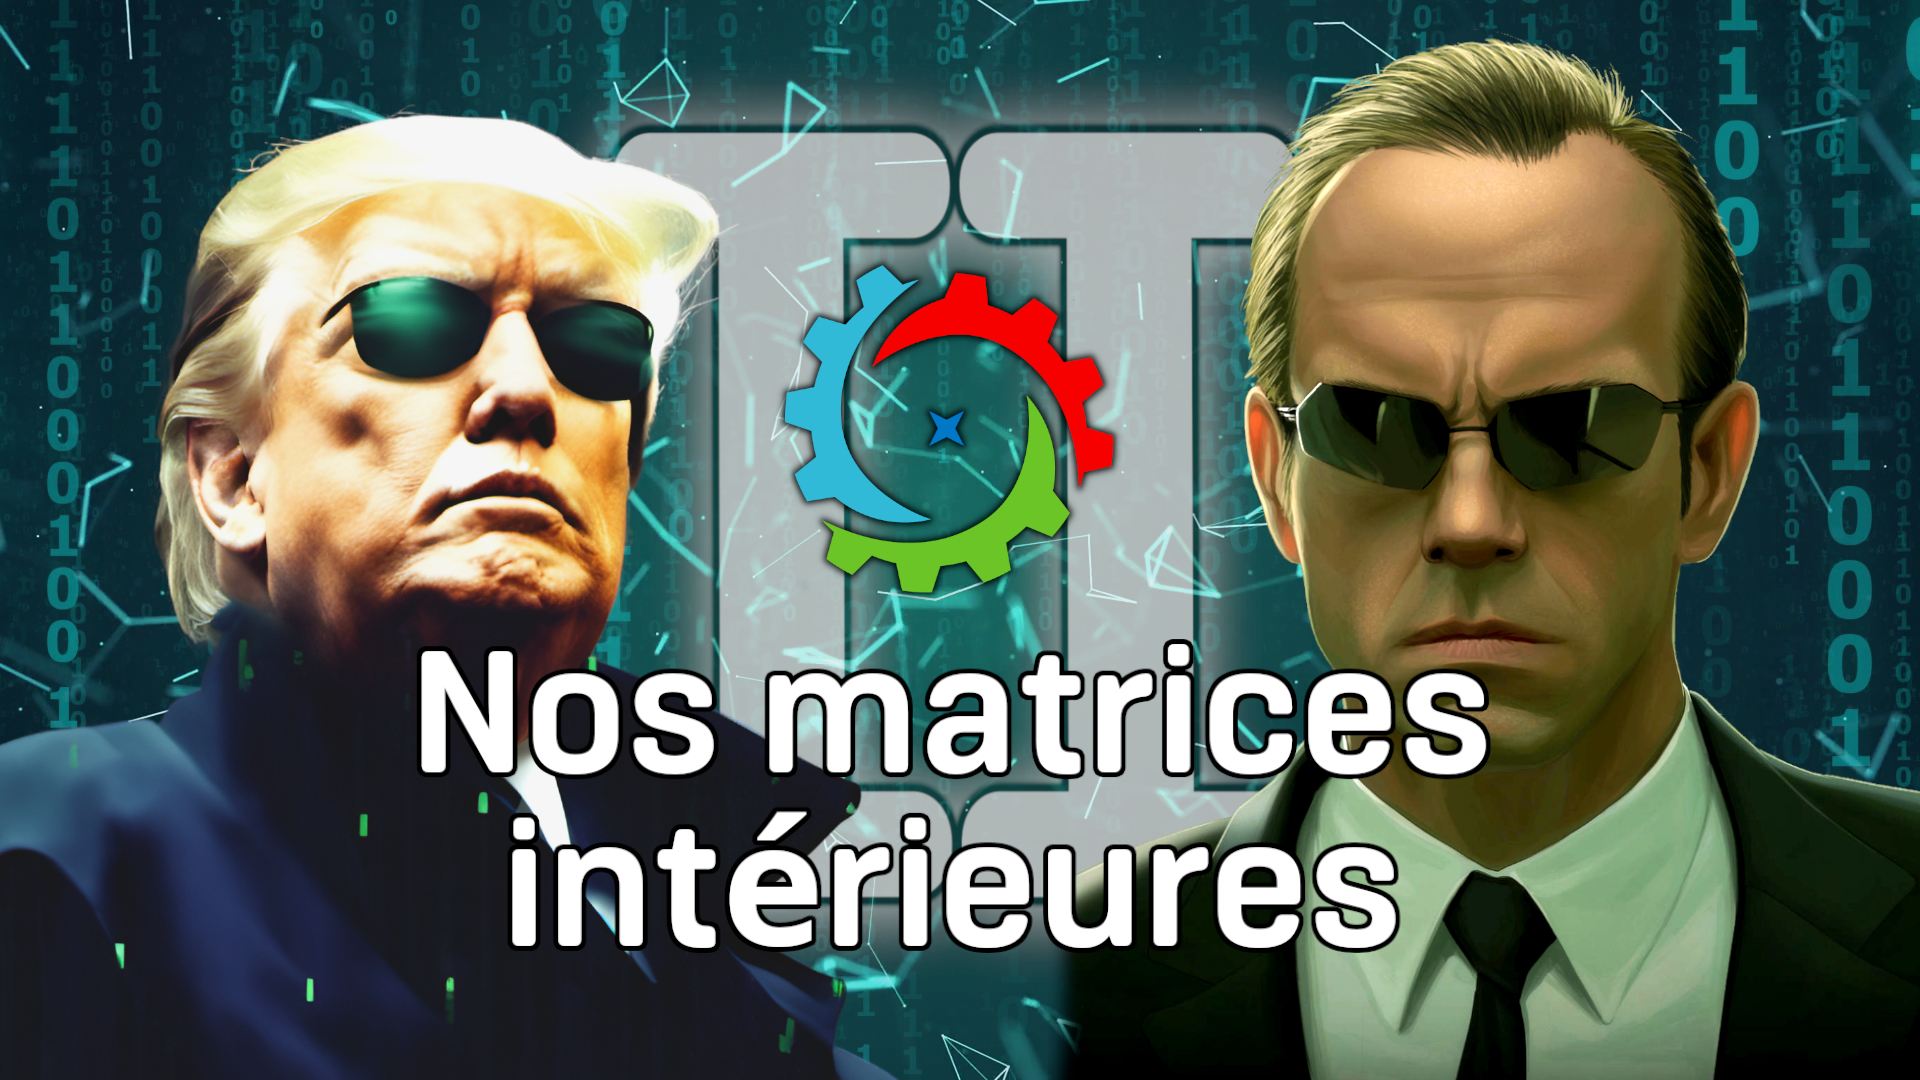 Miniature de la vidéo avec le titre "Nos Matrices intérieures" avec Trump et l'agent Smith et leur lunettes de soleil.